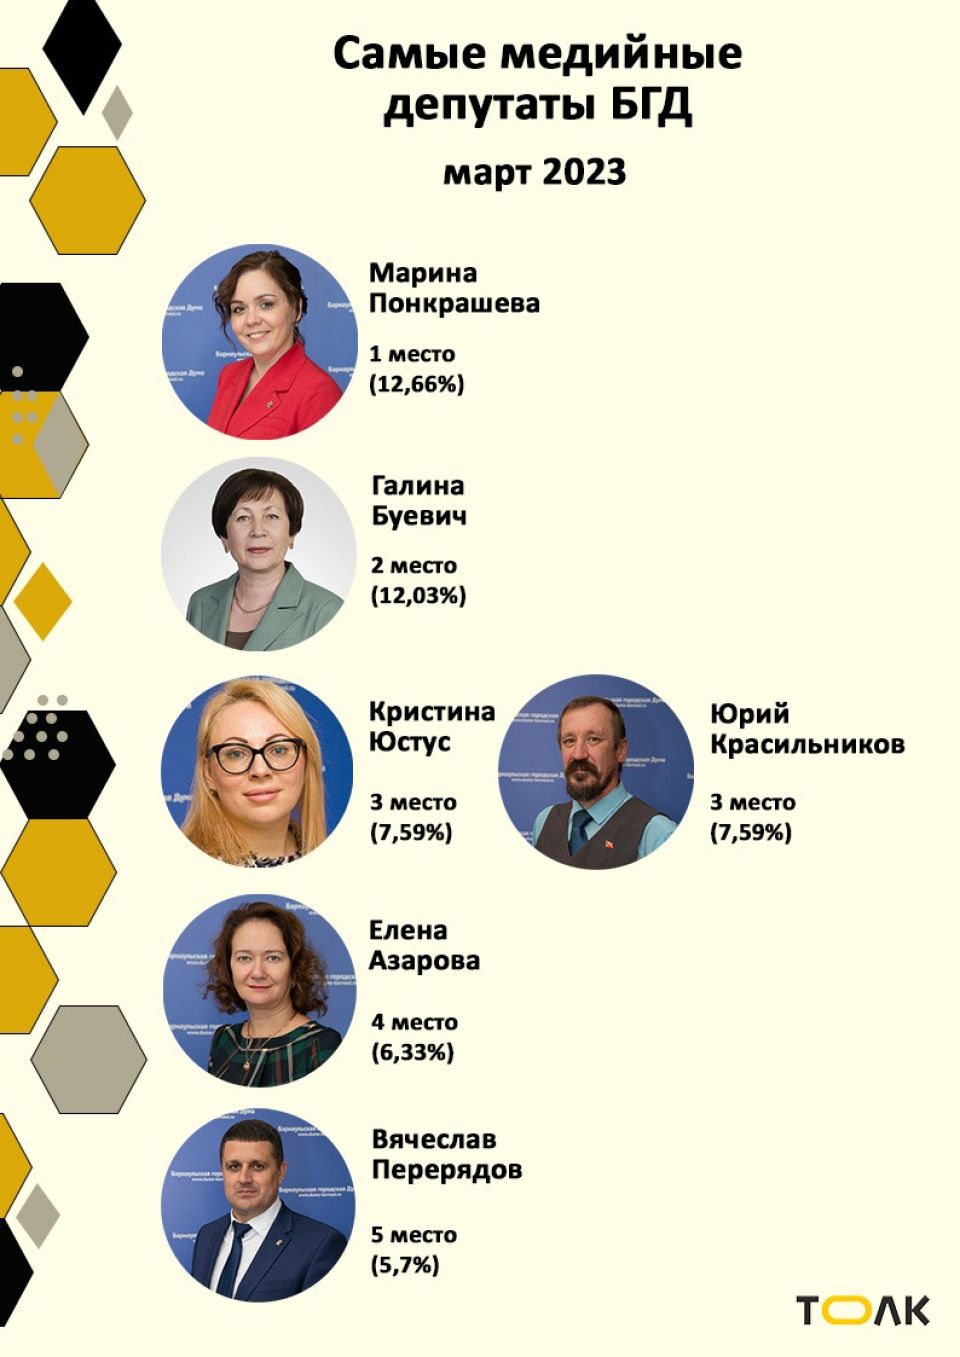 Рейтинг медийности депутатов БГД, март 2023 года